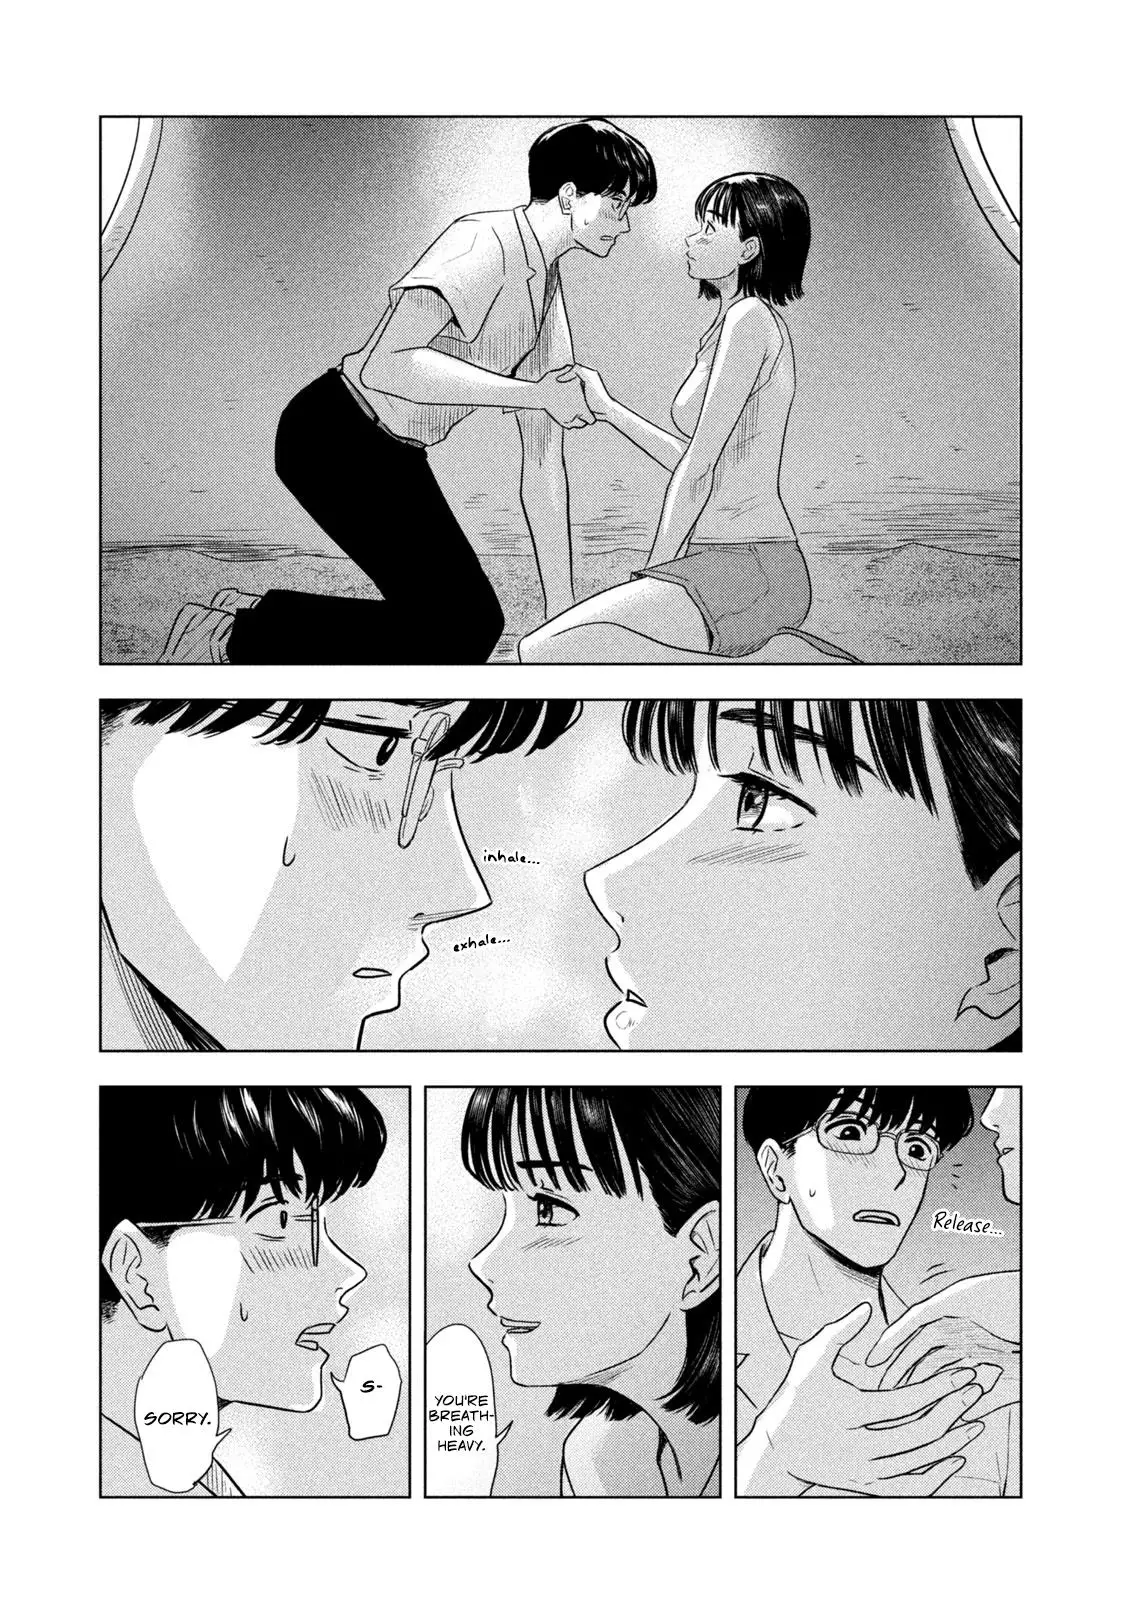 8-Gatsu 31-Nichi No Long Summer - 1 page 25-5cbda92c